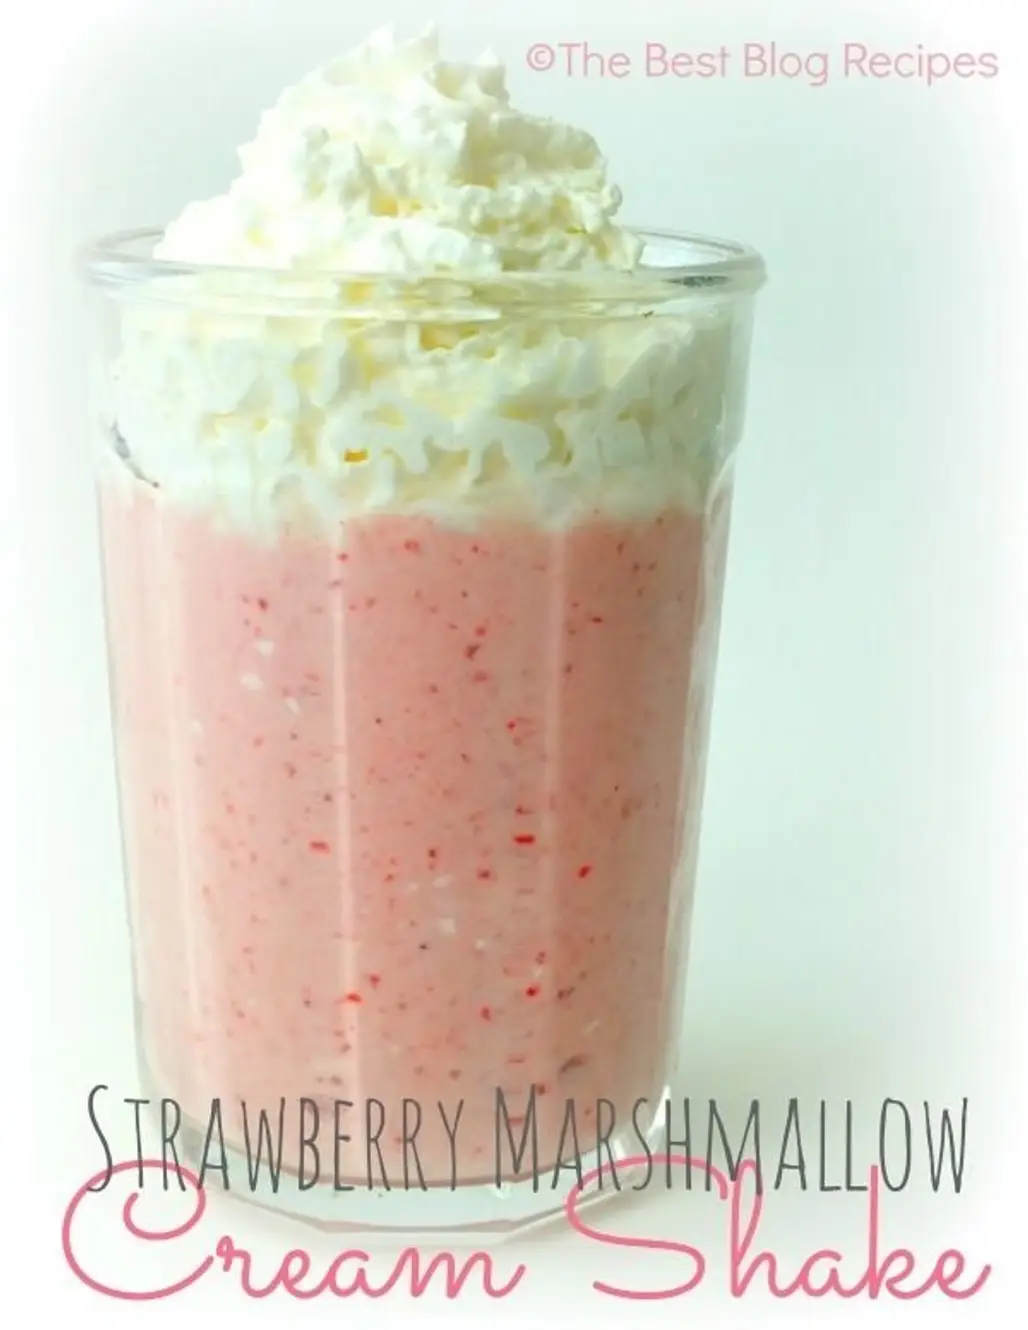 Strawberry Marshmallow Cream Shake